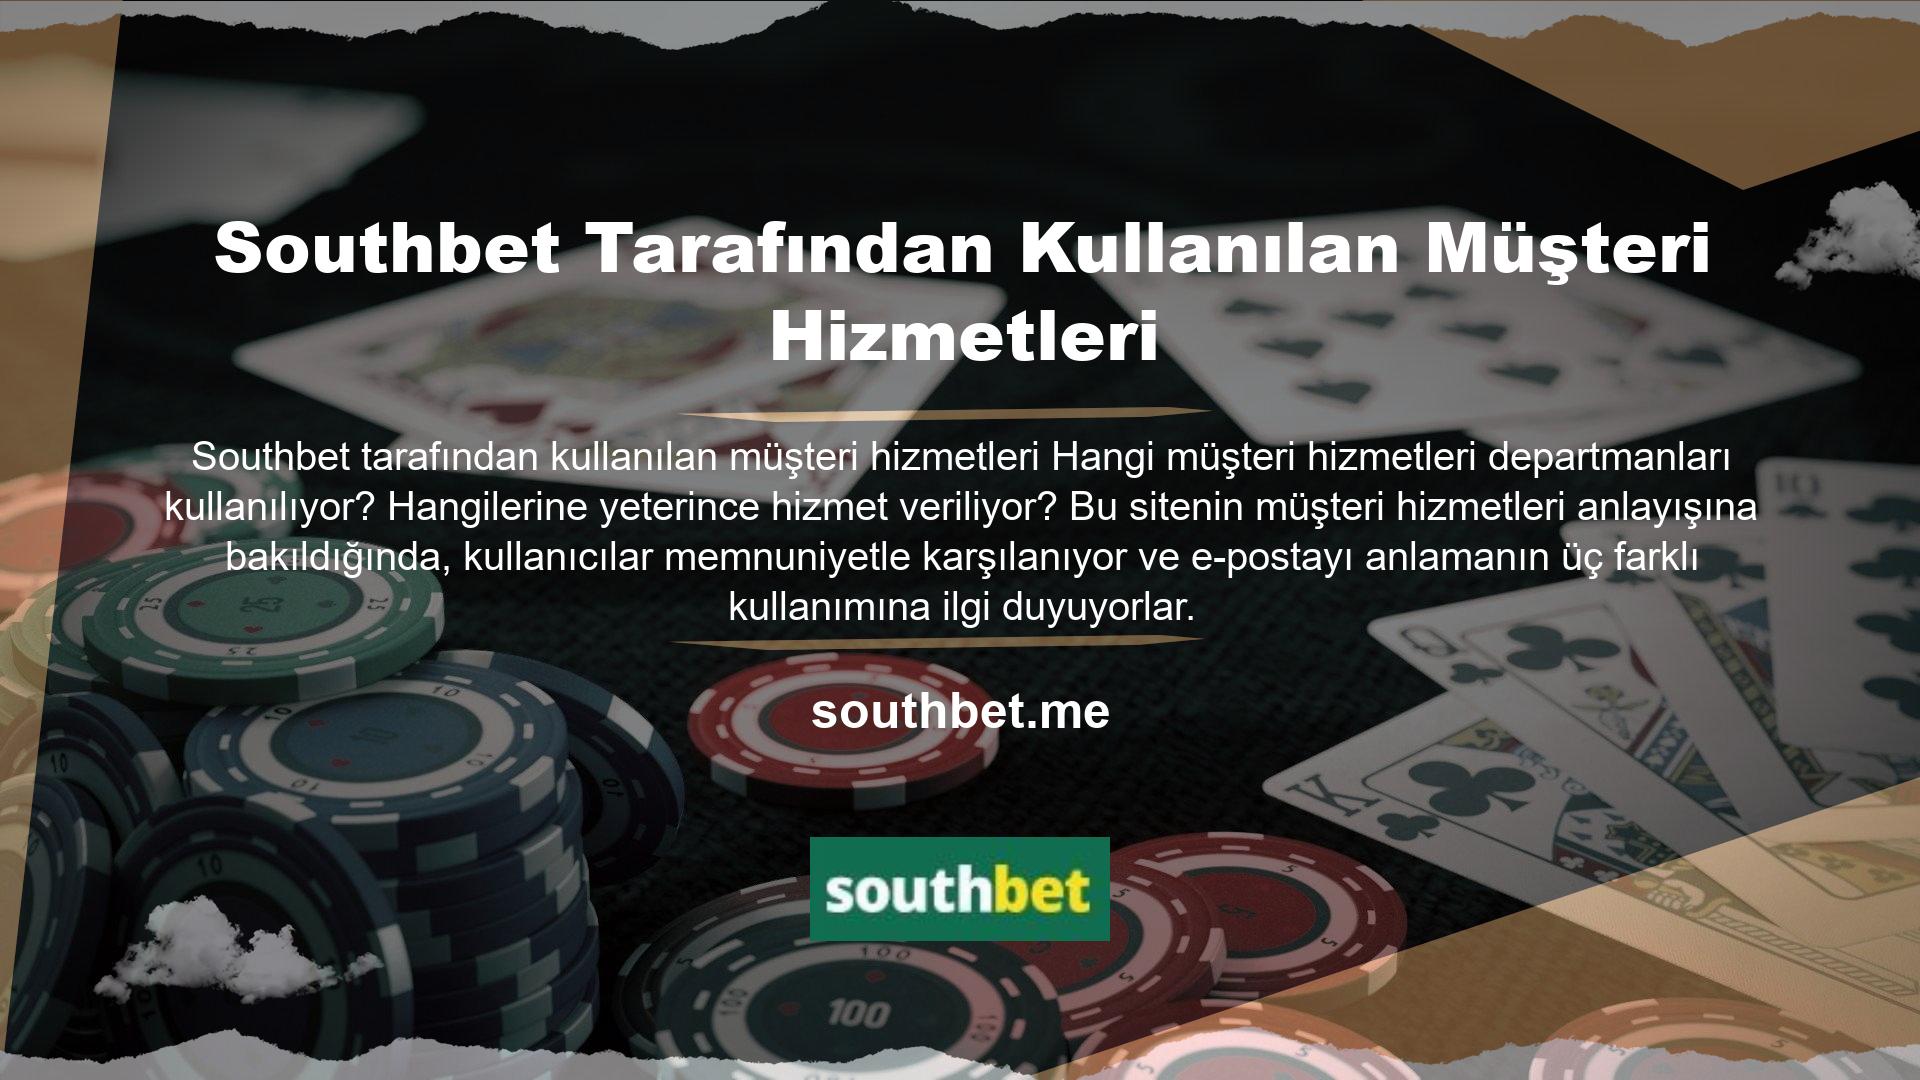 Bunu görebilirsiniz Southbet online destek uygulamasını da aktif olarak kullanıyoruz